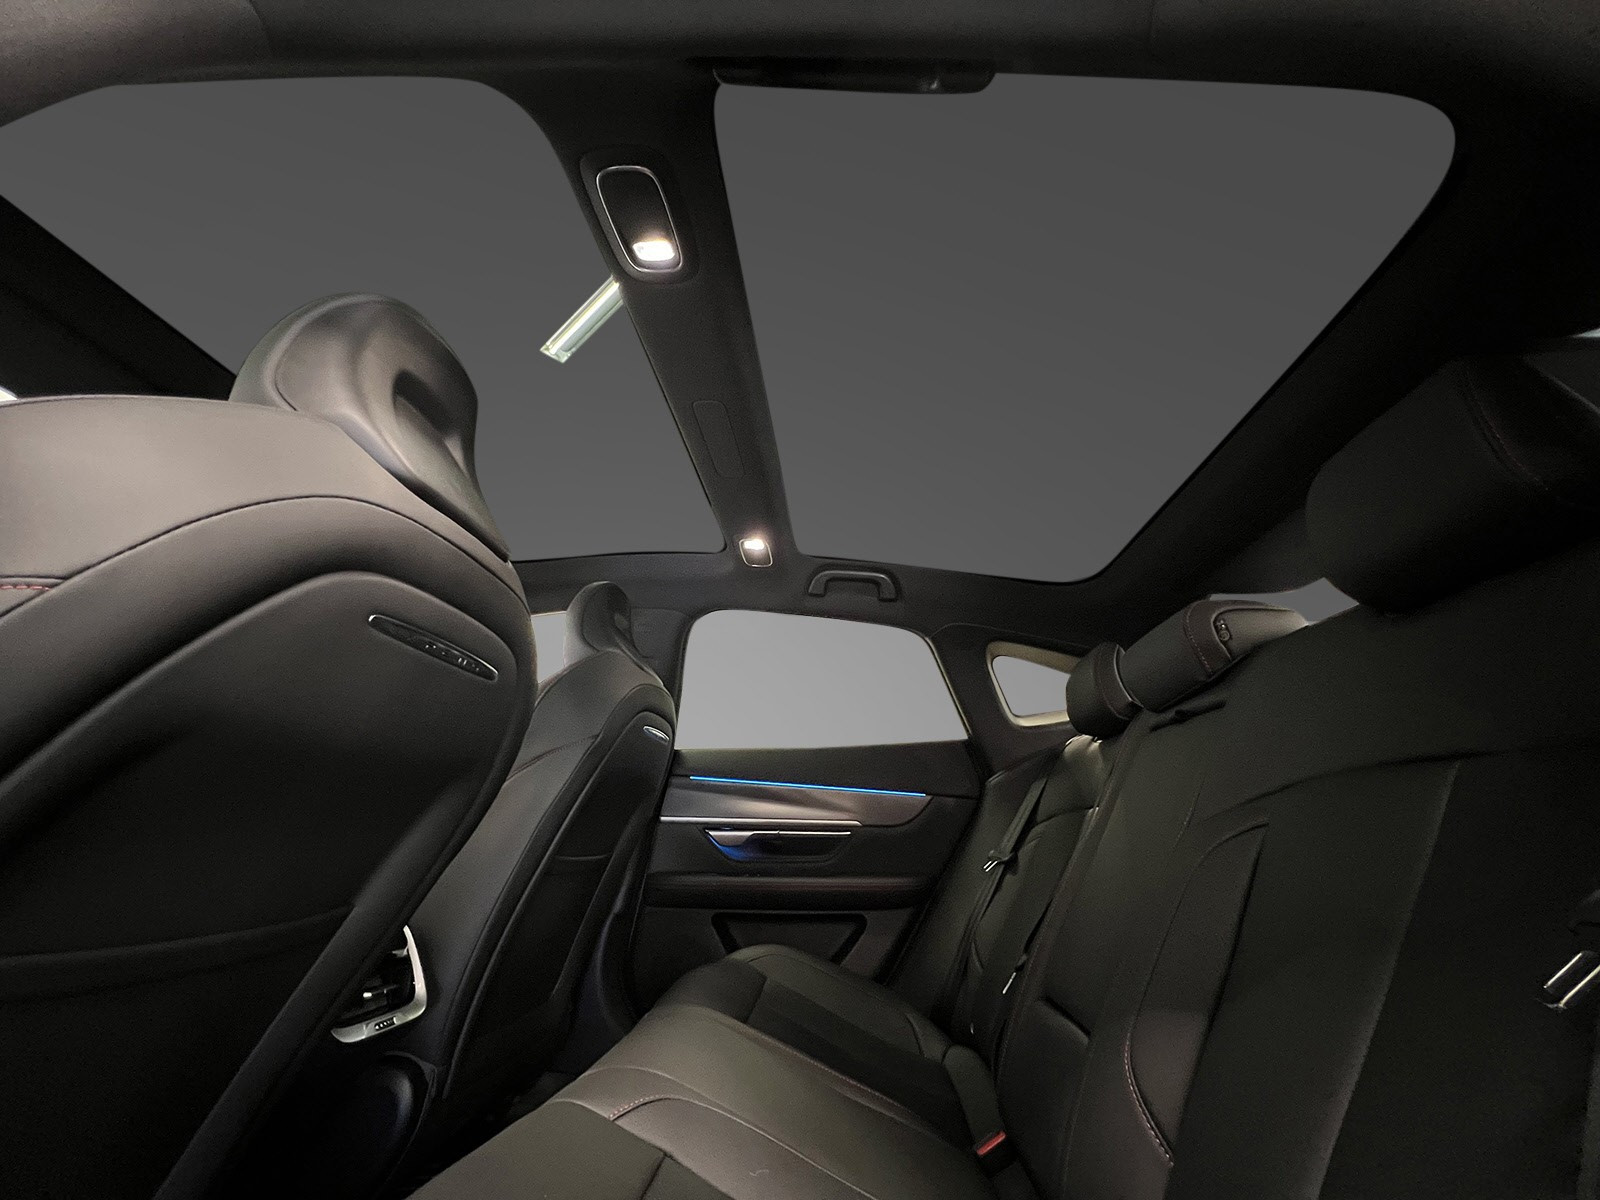 Panorama tak gir god lys inn og bidrar til en god kjøreopplevelse